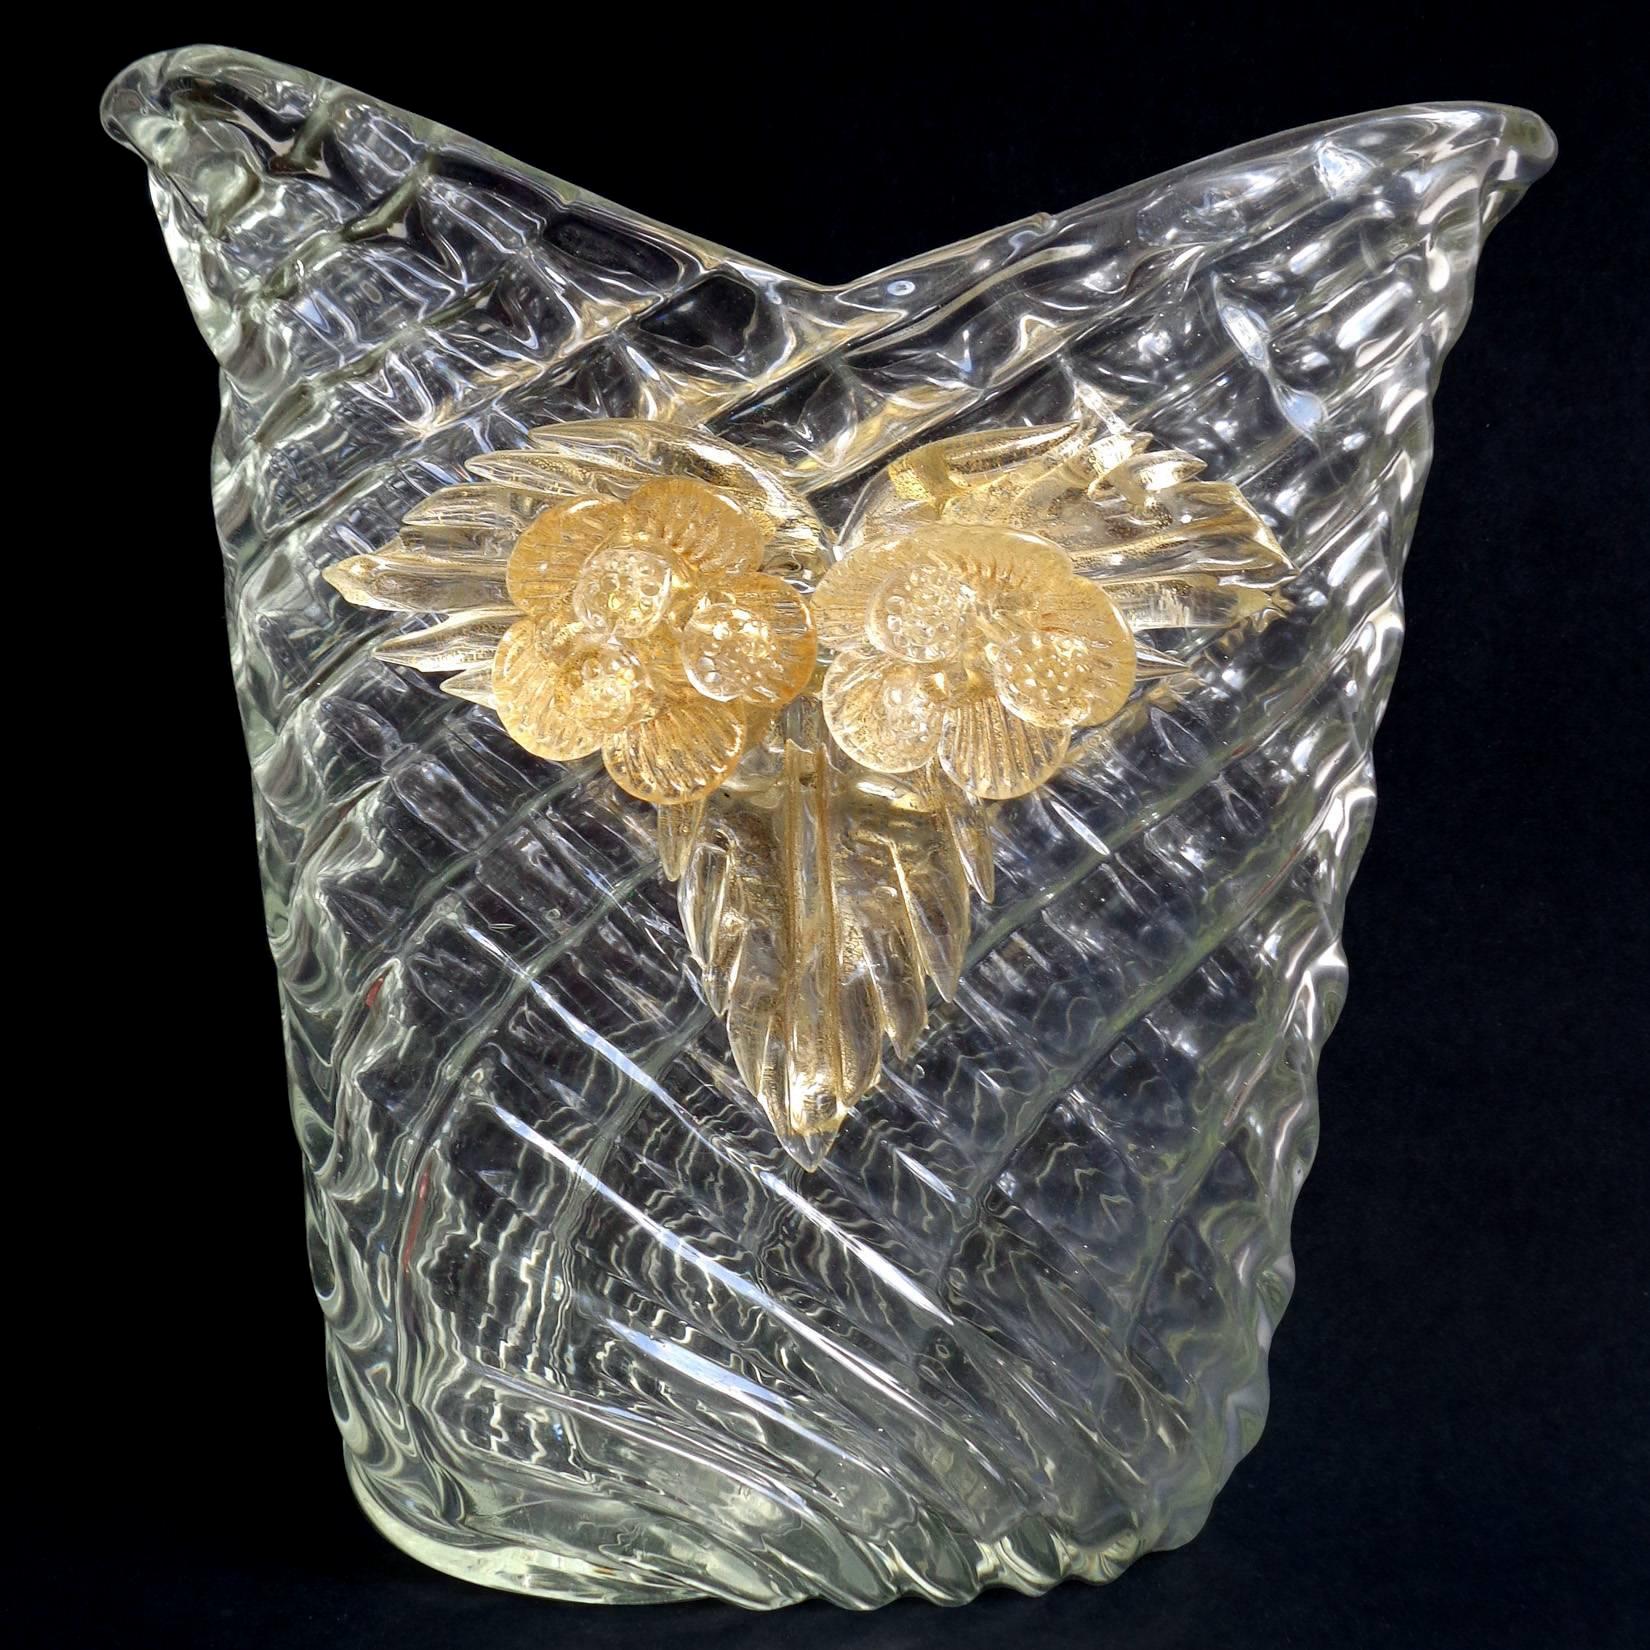 Magnifique grand vase en verre d'art italien matelassé de Murano, transparent comme du cristal, avec des fleurs et des feuilles d'or. Attesté au designer Flavio Poli pour Seguso Vetri d'Arte, vers 1949, dans le design 